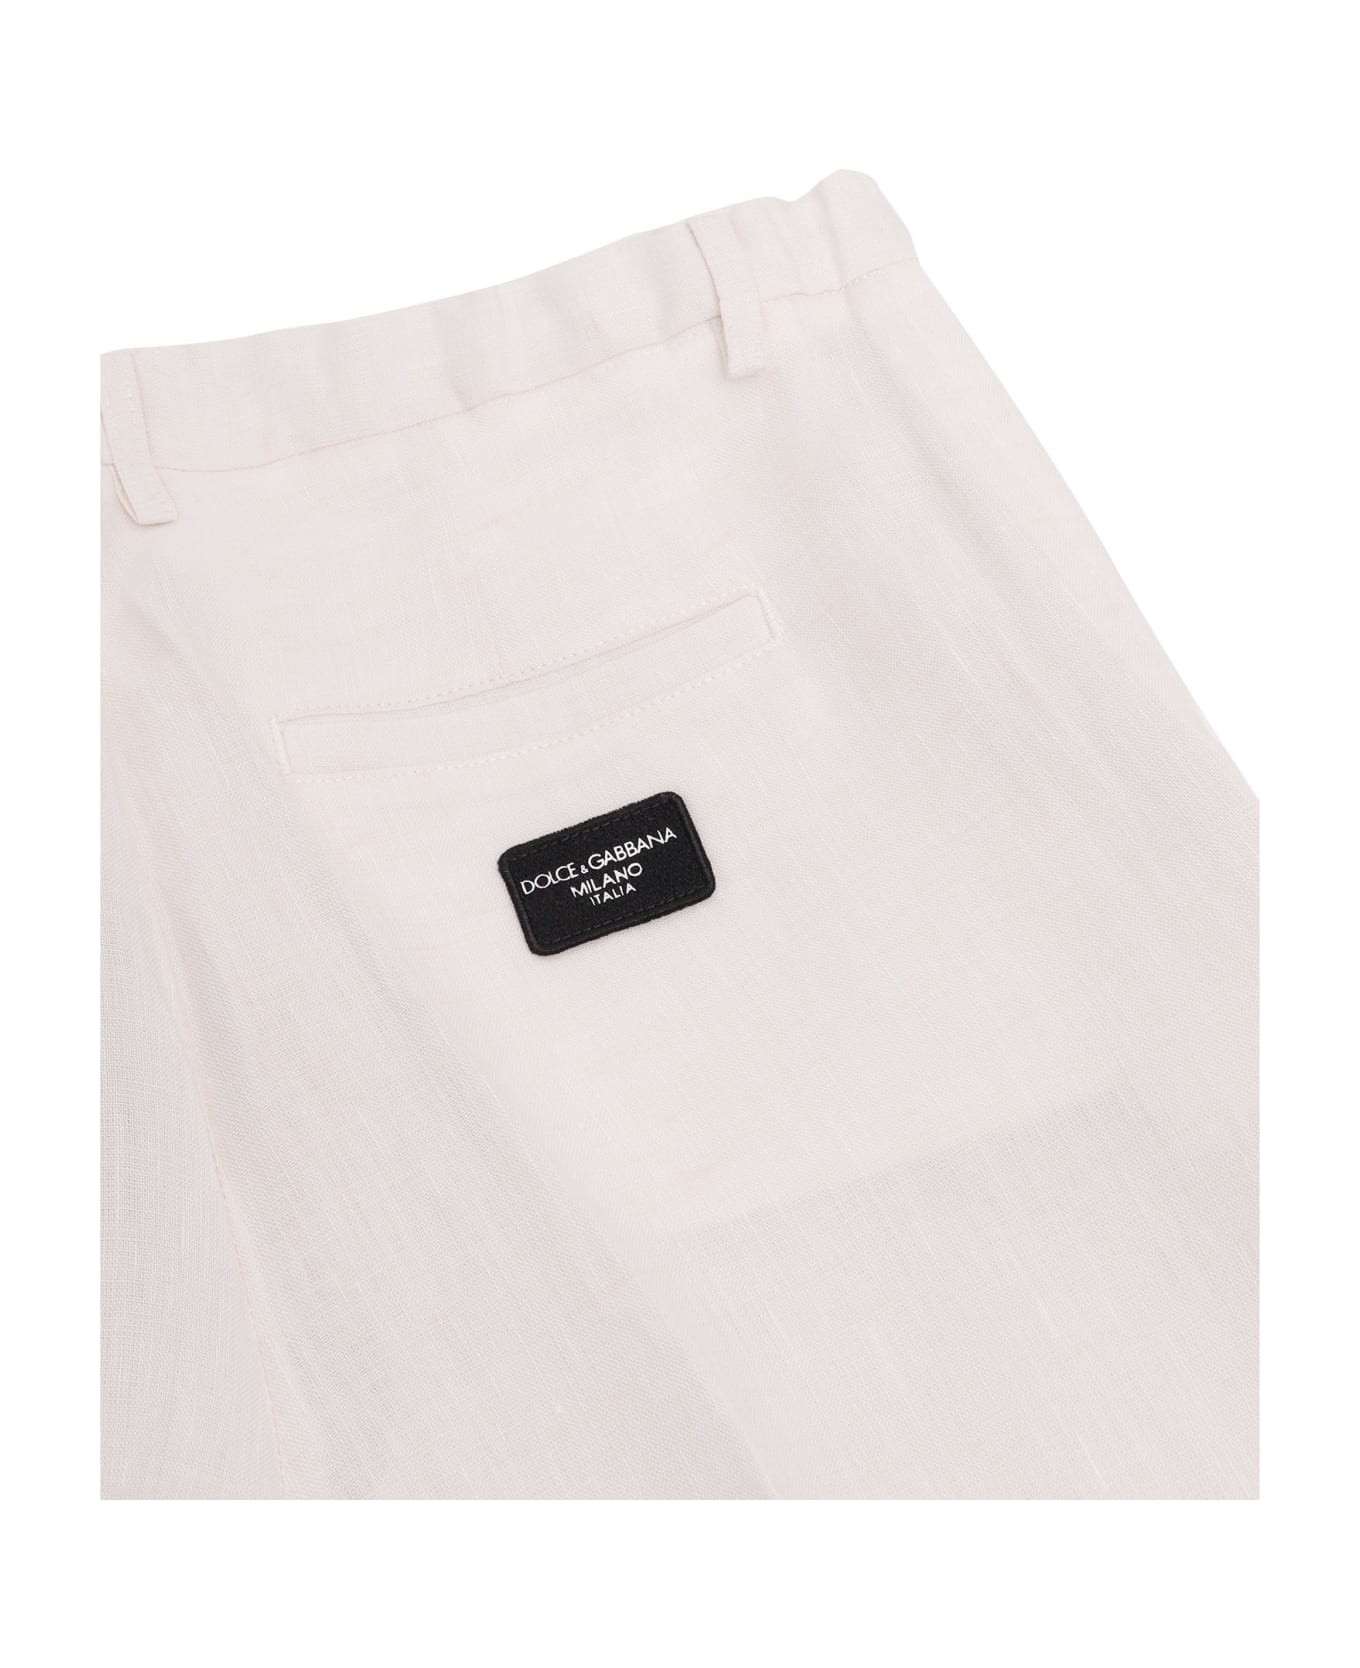 Dolce & Gabbana D&g Linen Bermuda Shorts - BEIGE